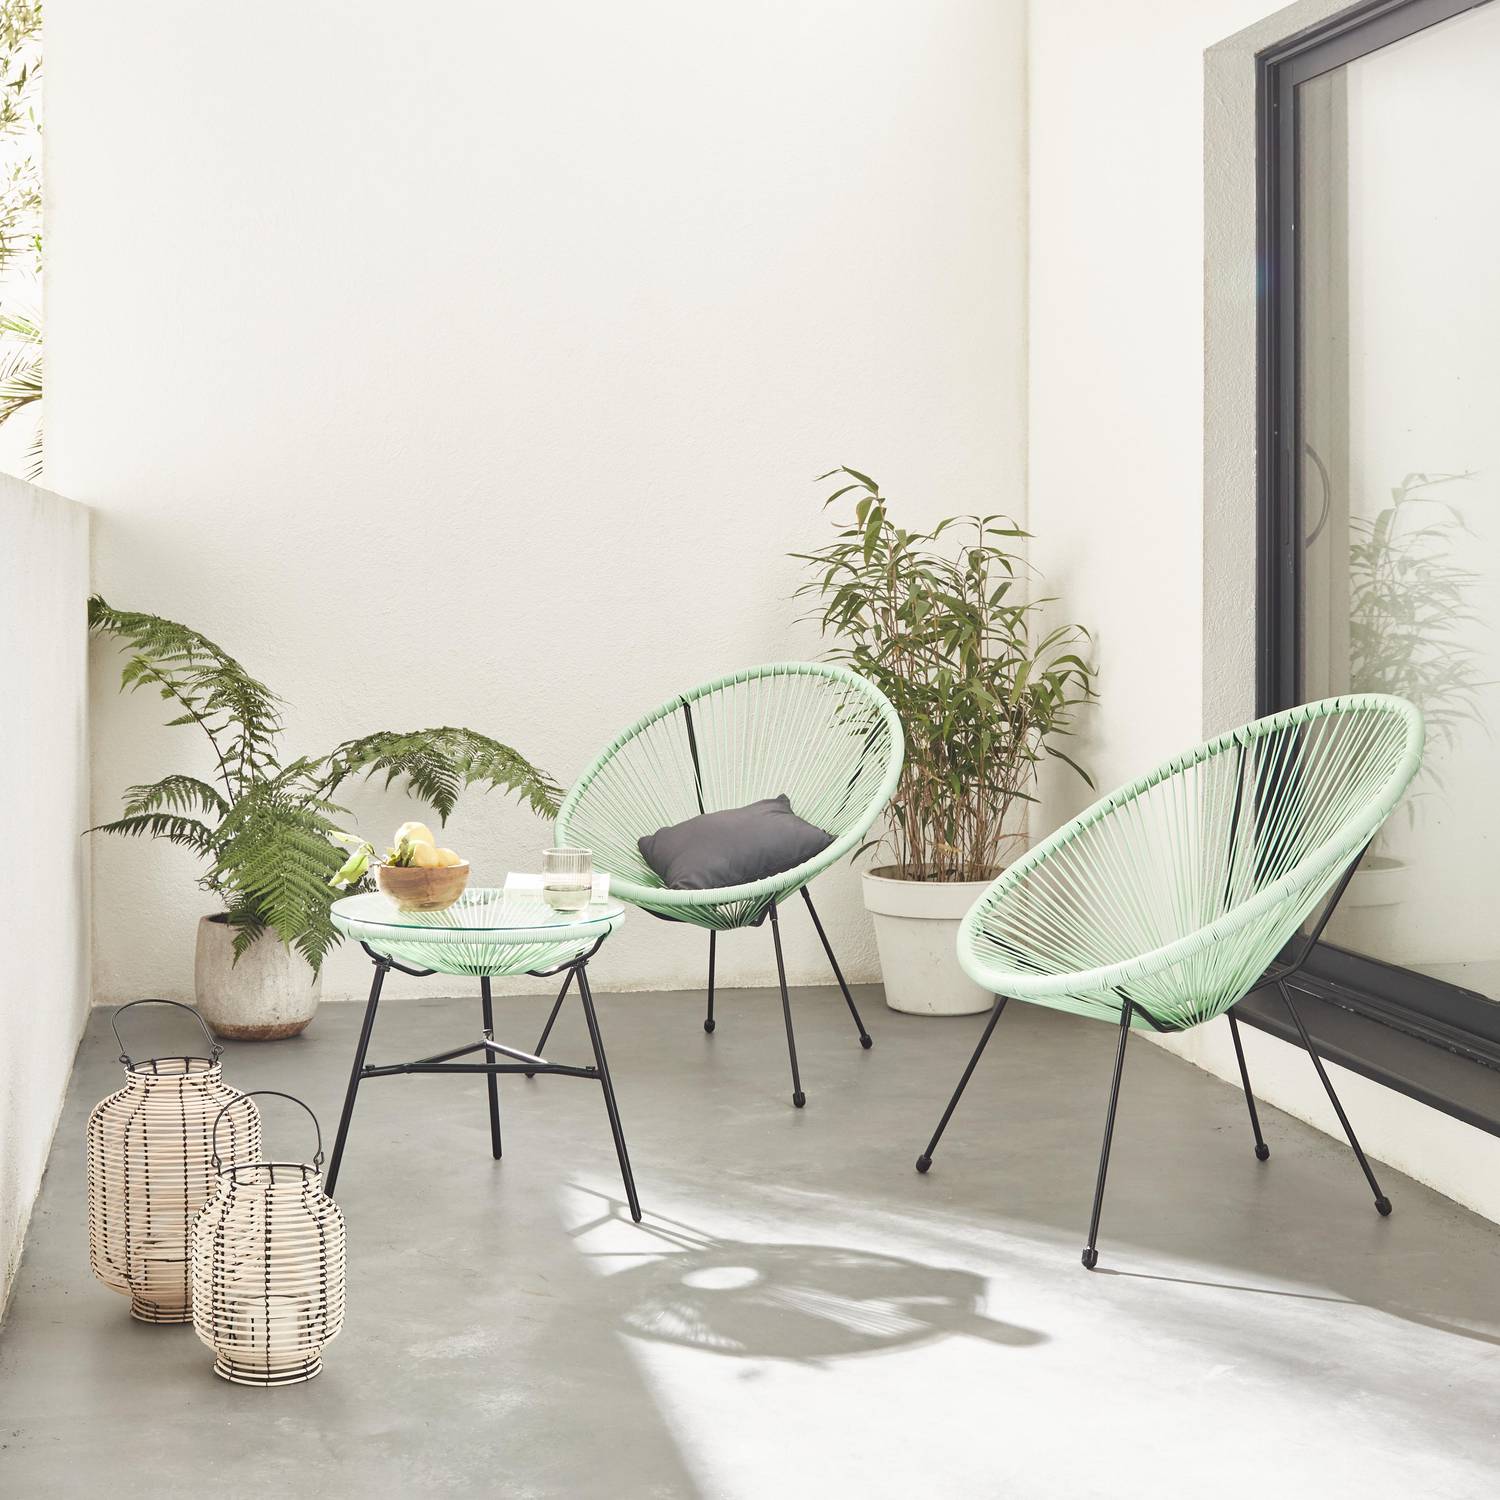 Set mit 2 eiförmigen ACAPULCO-Sesseln mit Beistelltisch - seegrün- 4-beinige Sessel im Retro-Design mit Couchtisch, Kunststoffschnur Photo1